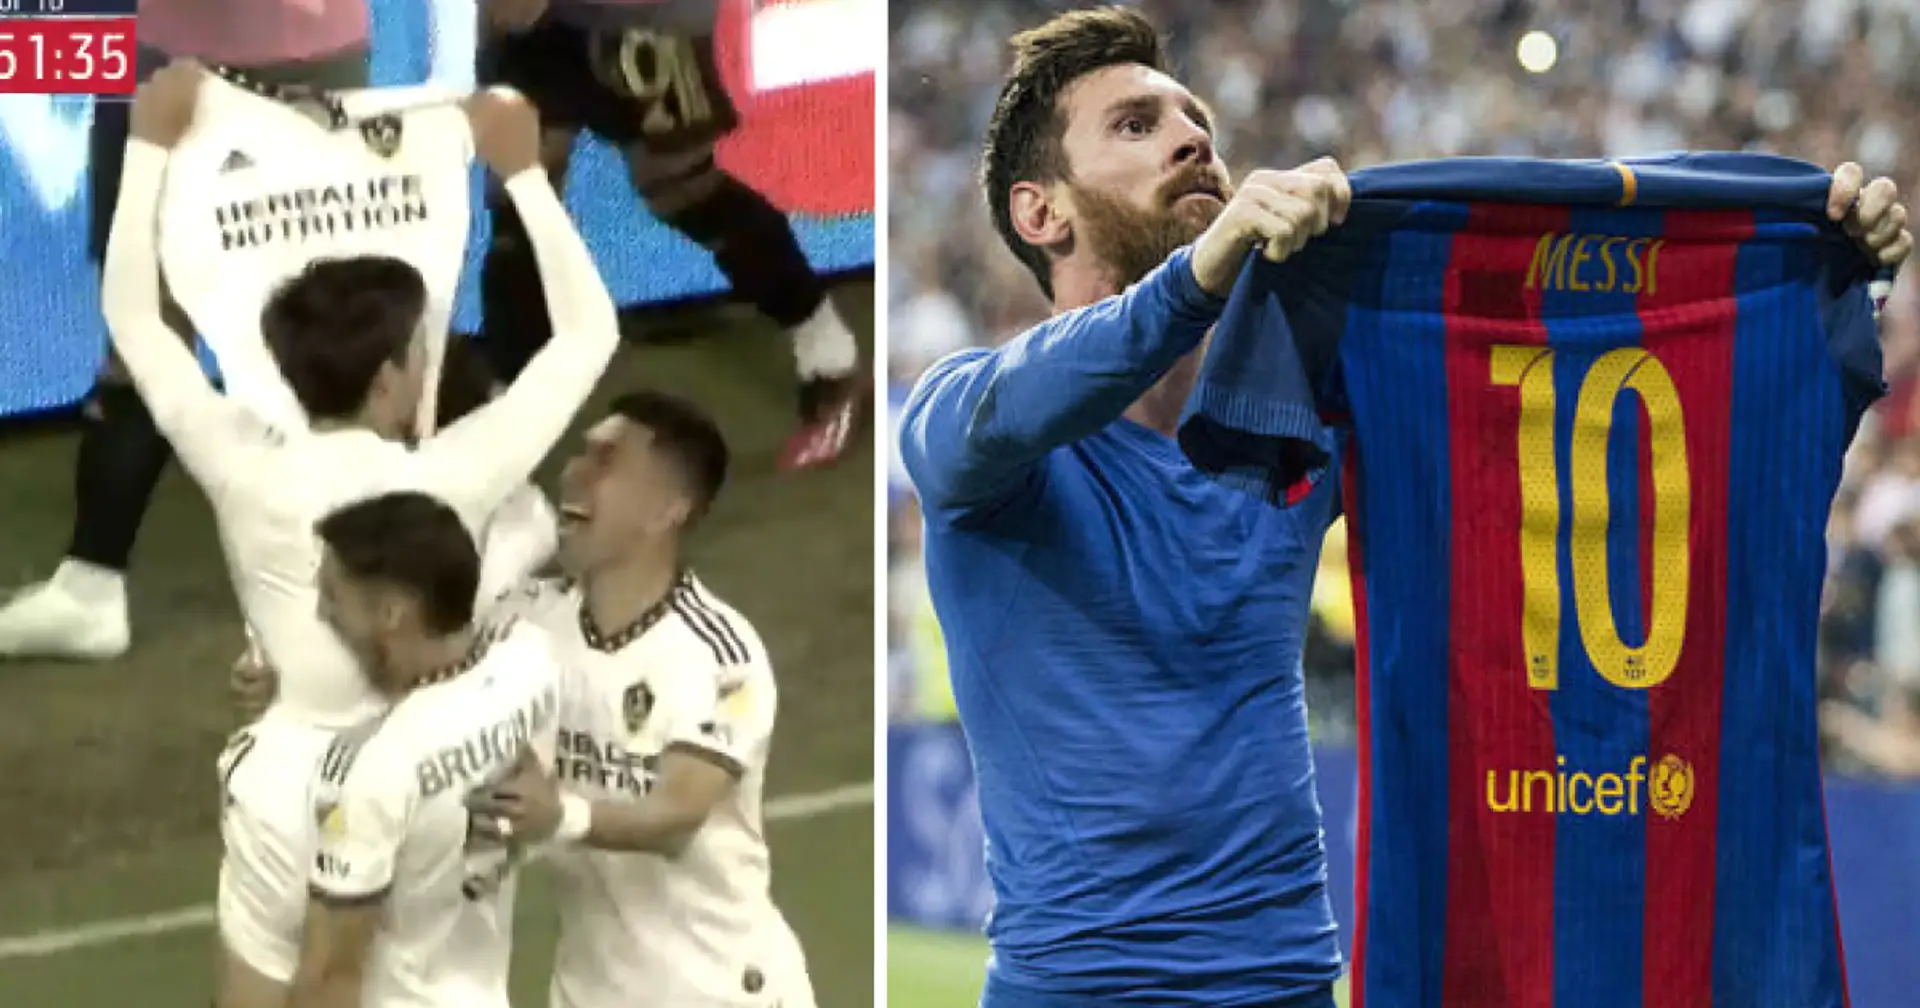 A VOIR: Riqui Puig marque un but magique pour LA Galaxy et célèbre comme Messi